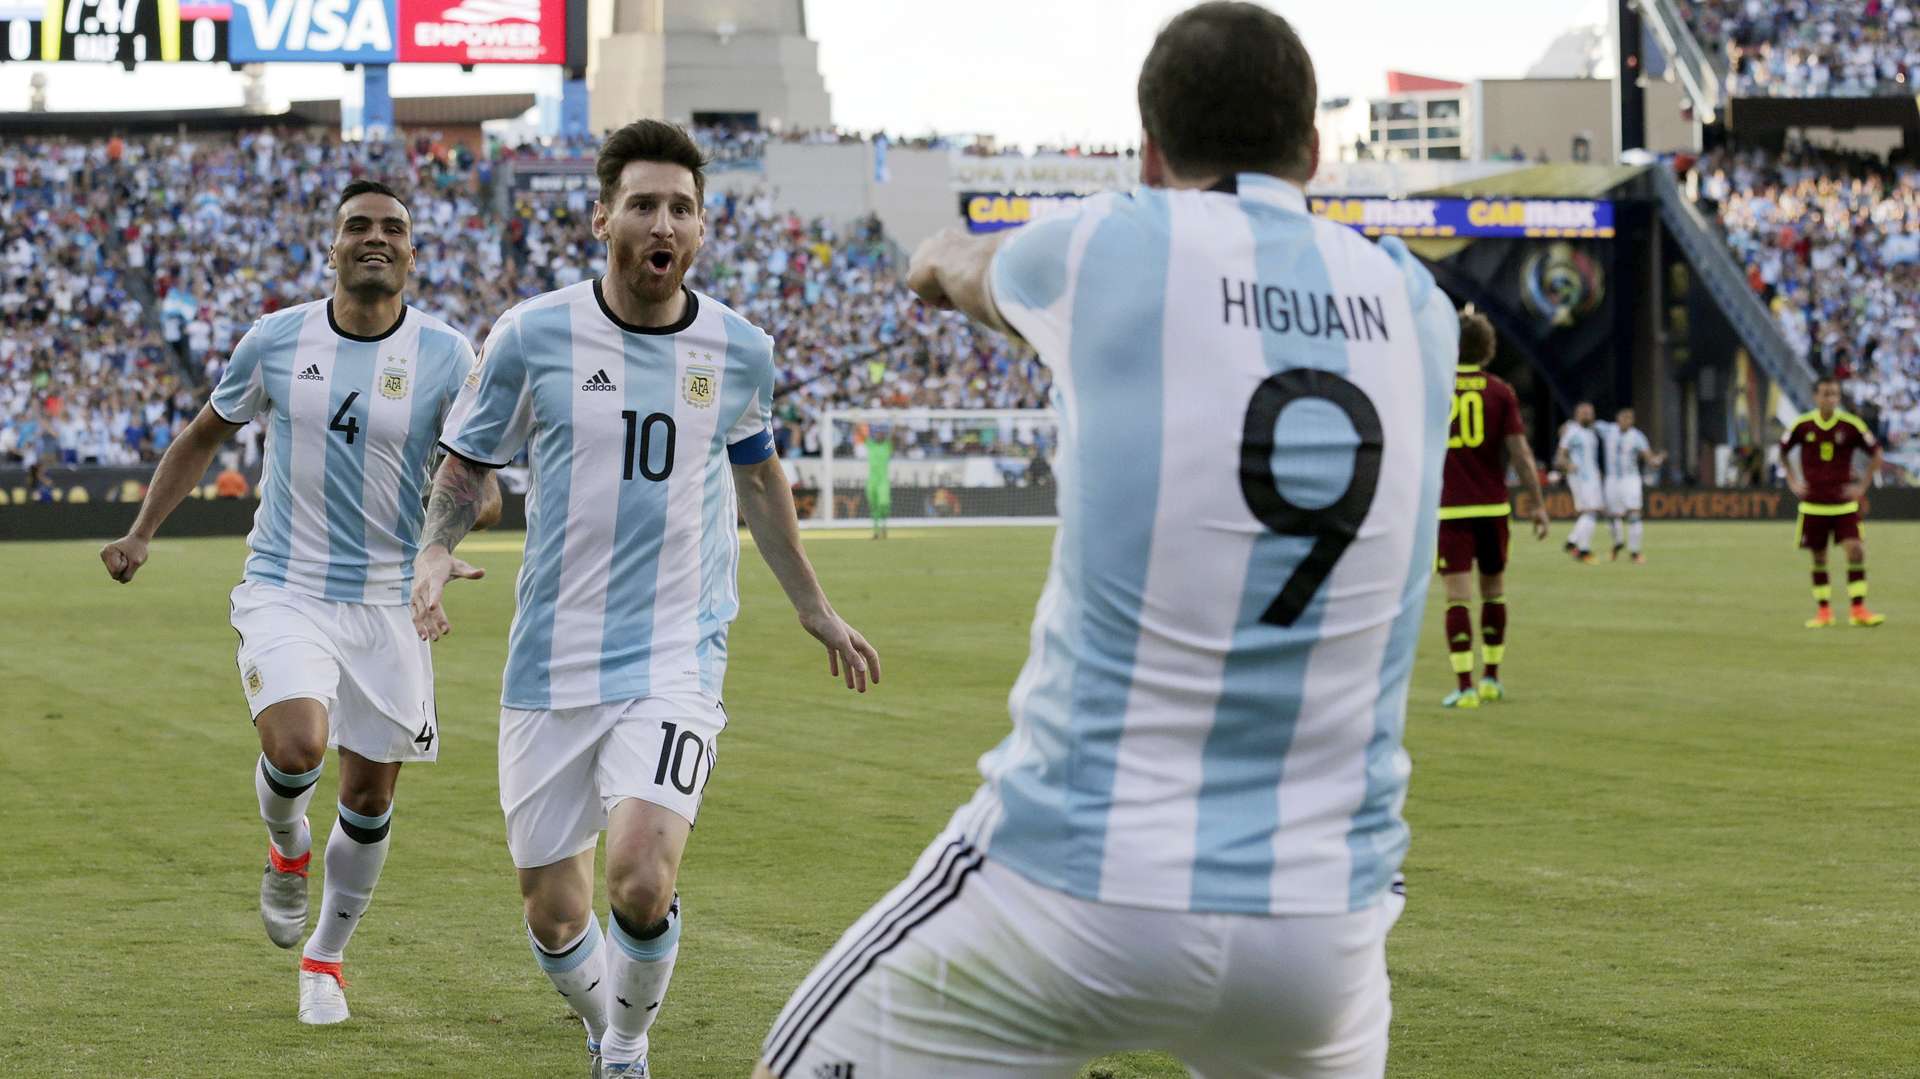 Lionel Messi tiene una deuda pendiente con la selección argentina, según sus críticos. /AP